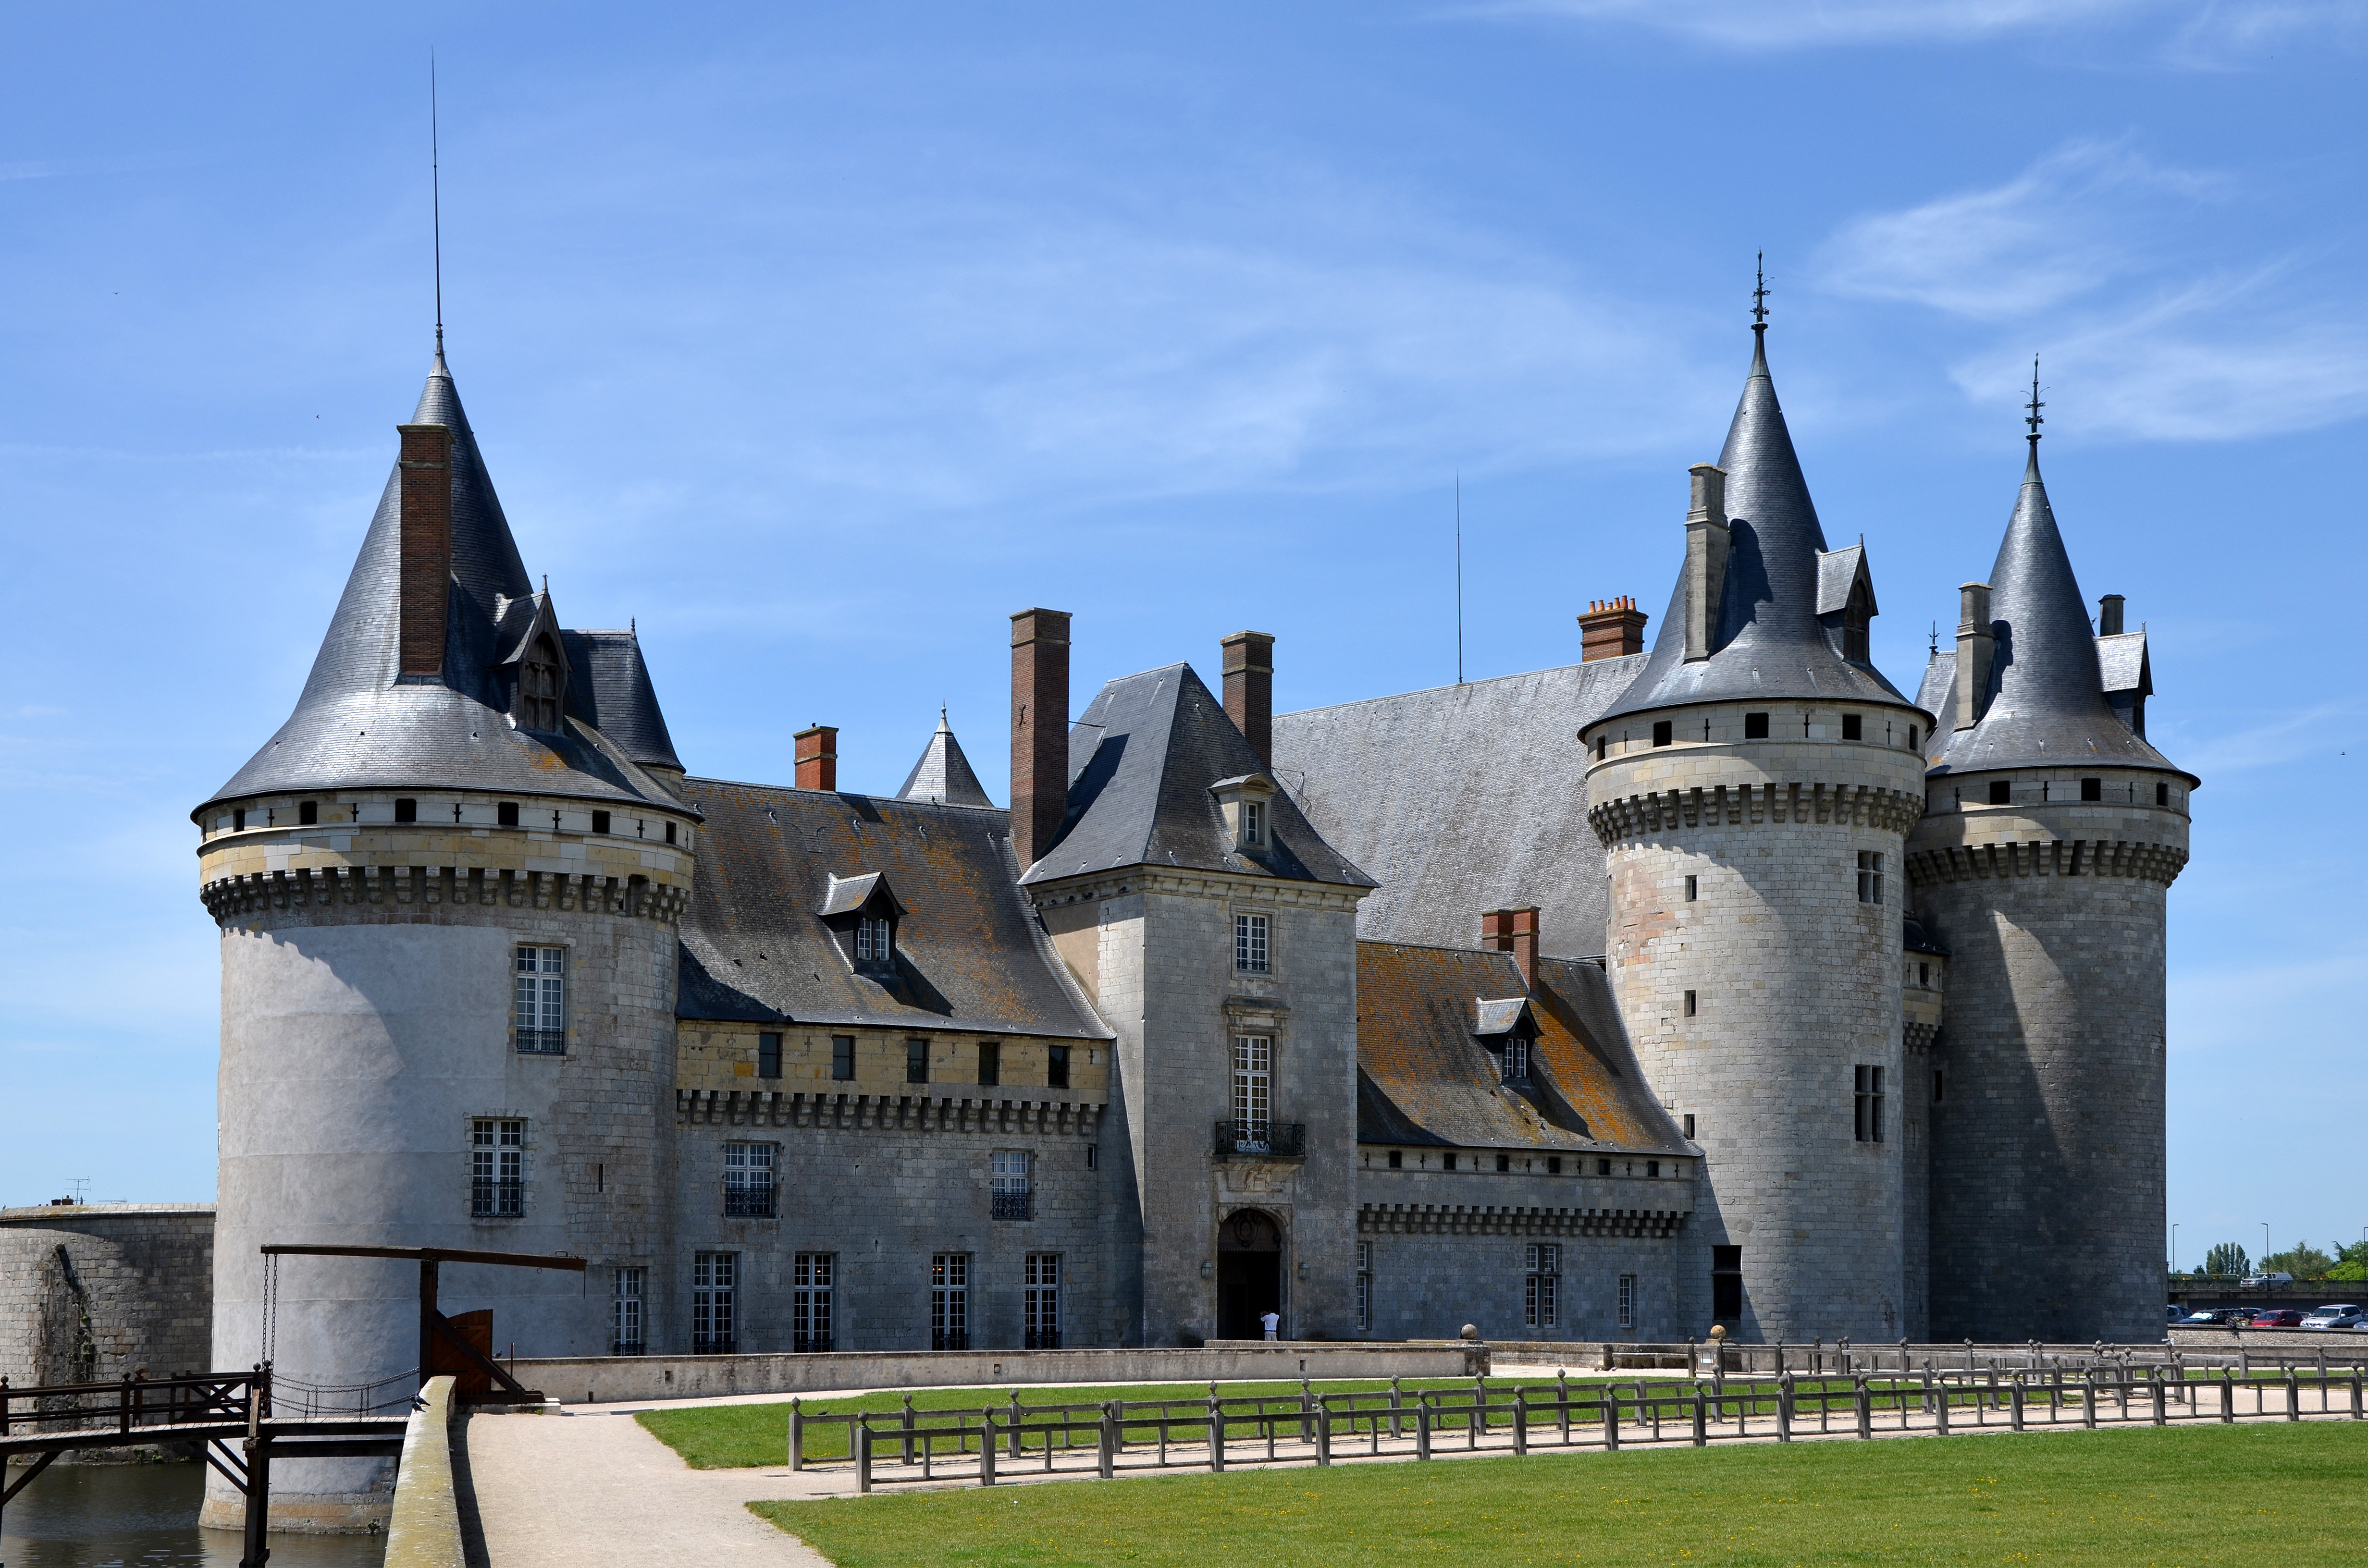 Château De Sully-sur-Loire Backgrounds on Wallpapers Vista